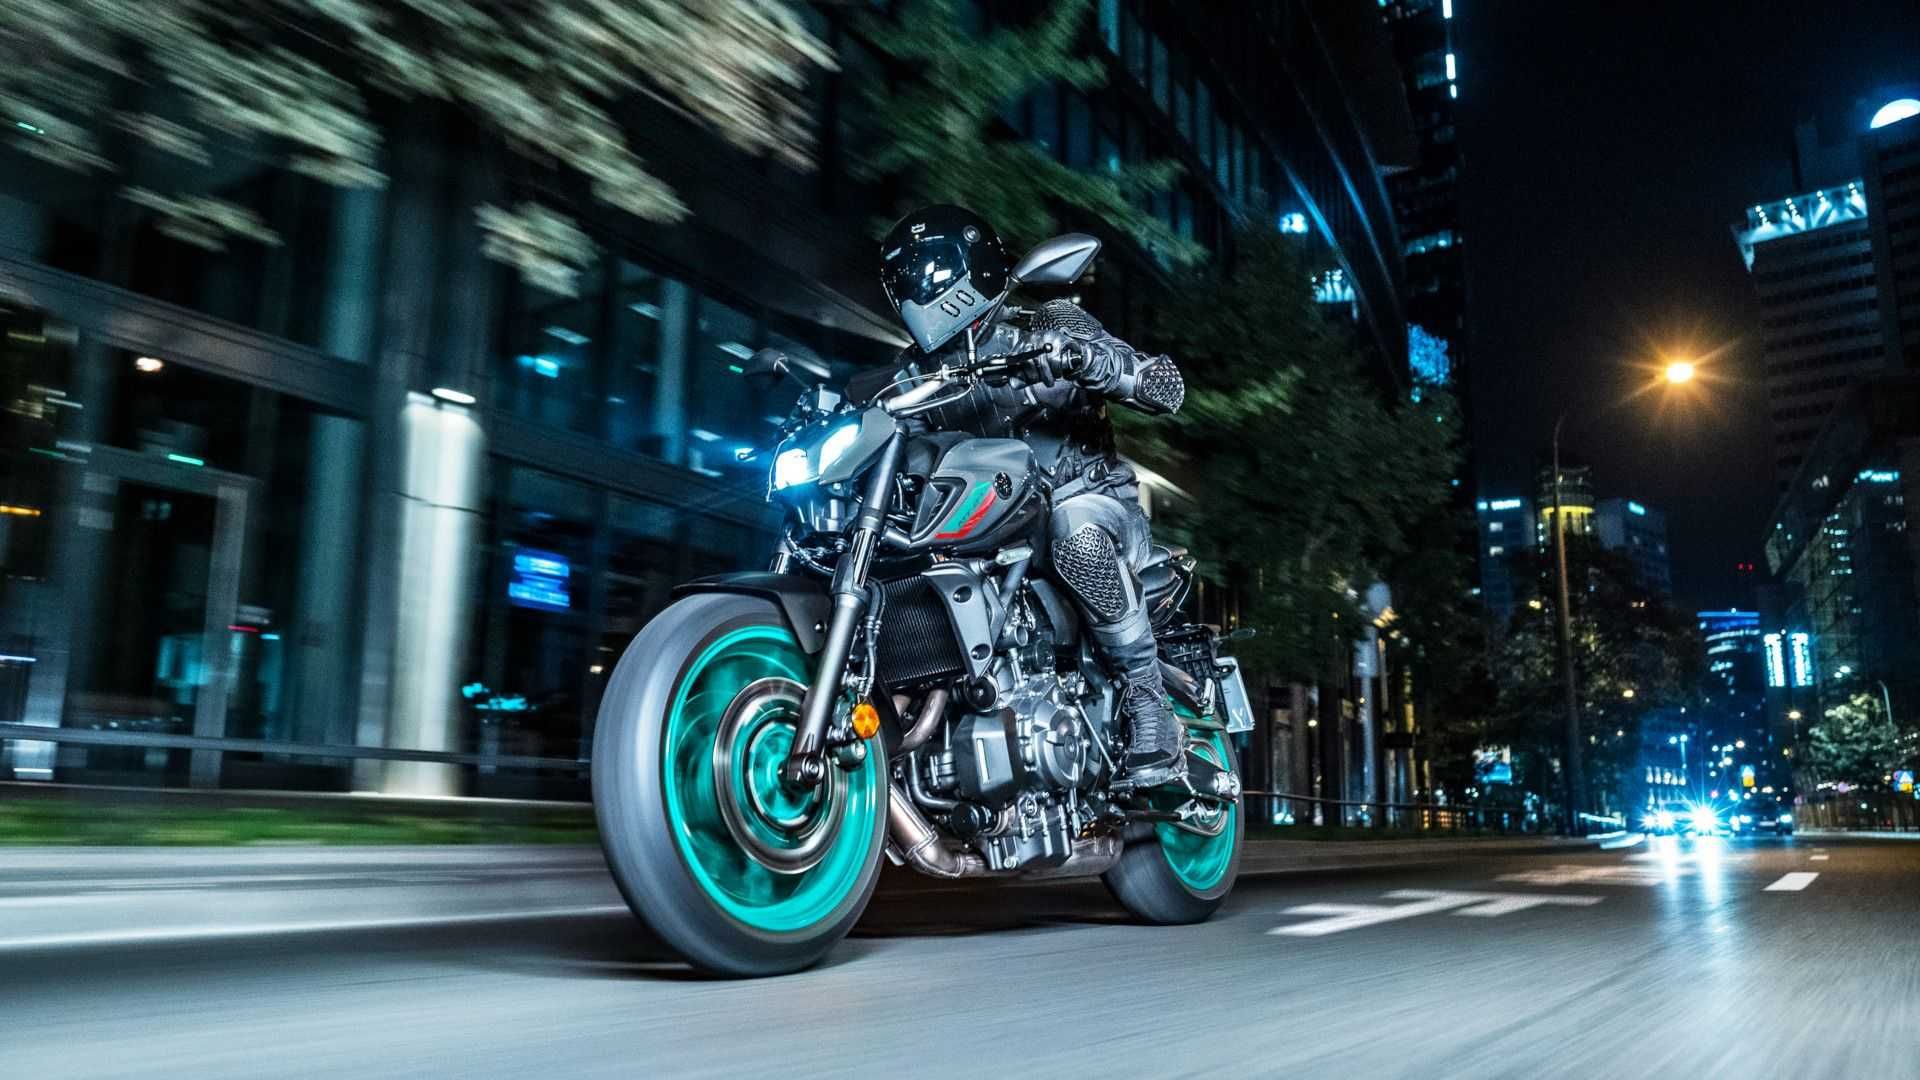 2022 Yamaha MT-07 riding shot